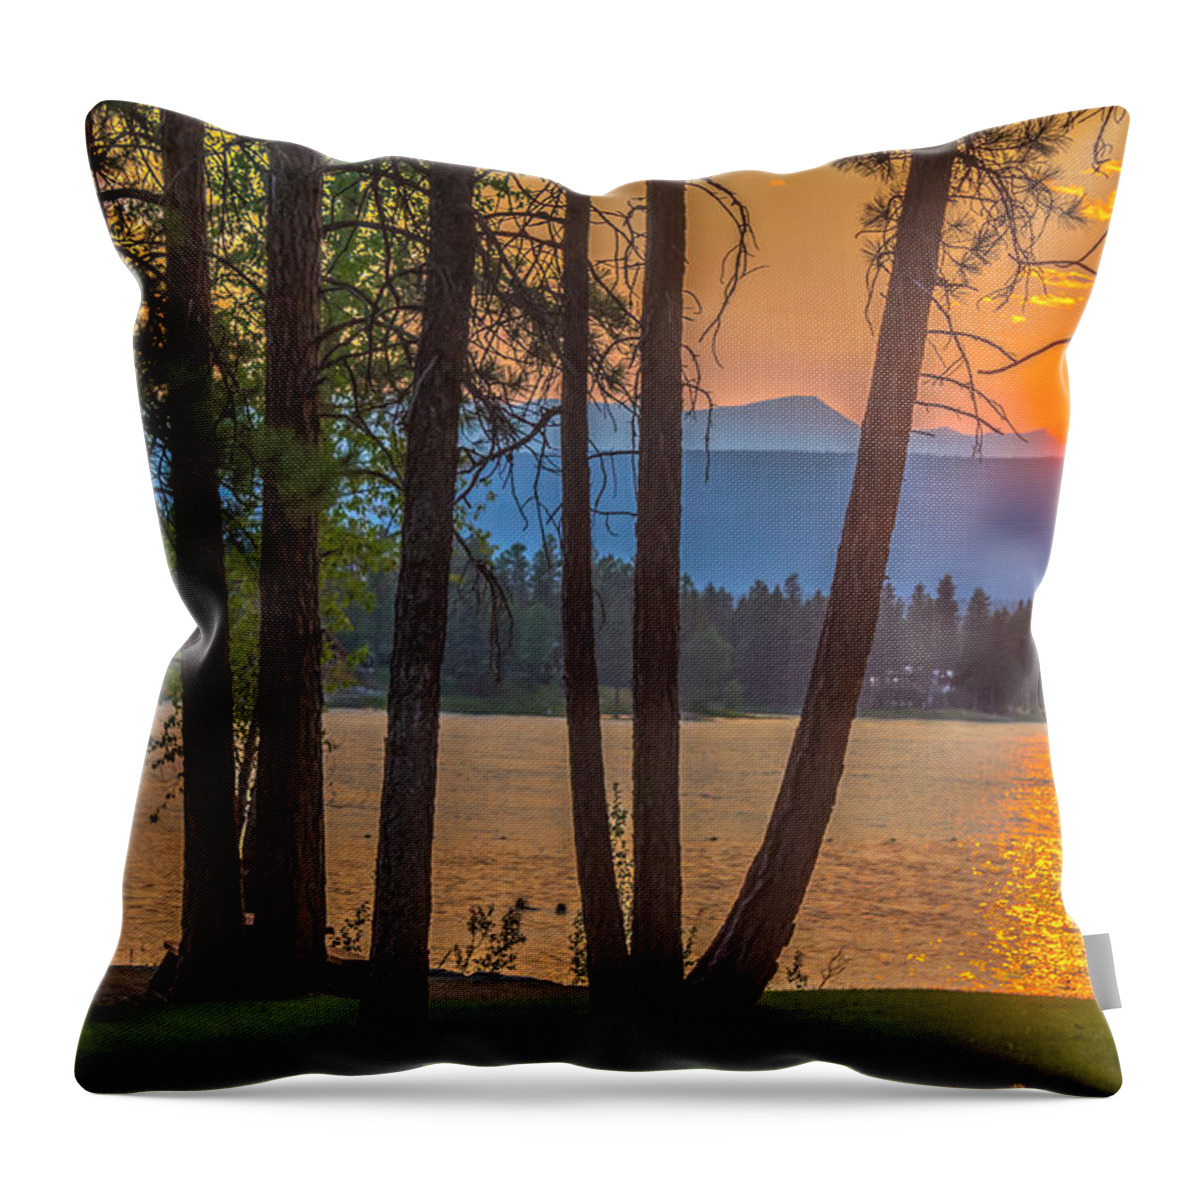 Wasa Lake Throw Pillow featuring the photograph Wasa by Thomas Nay